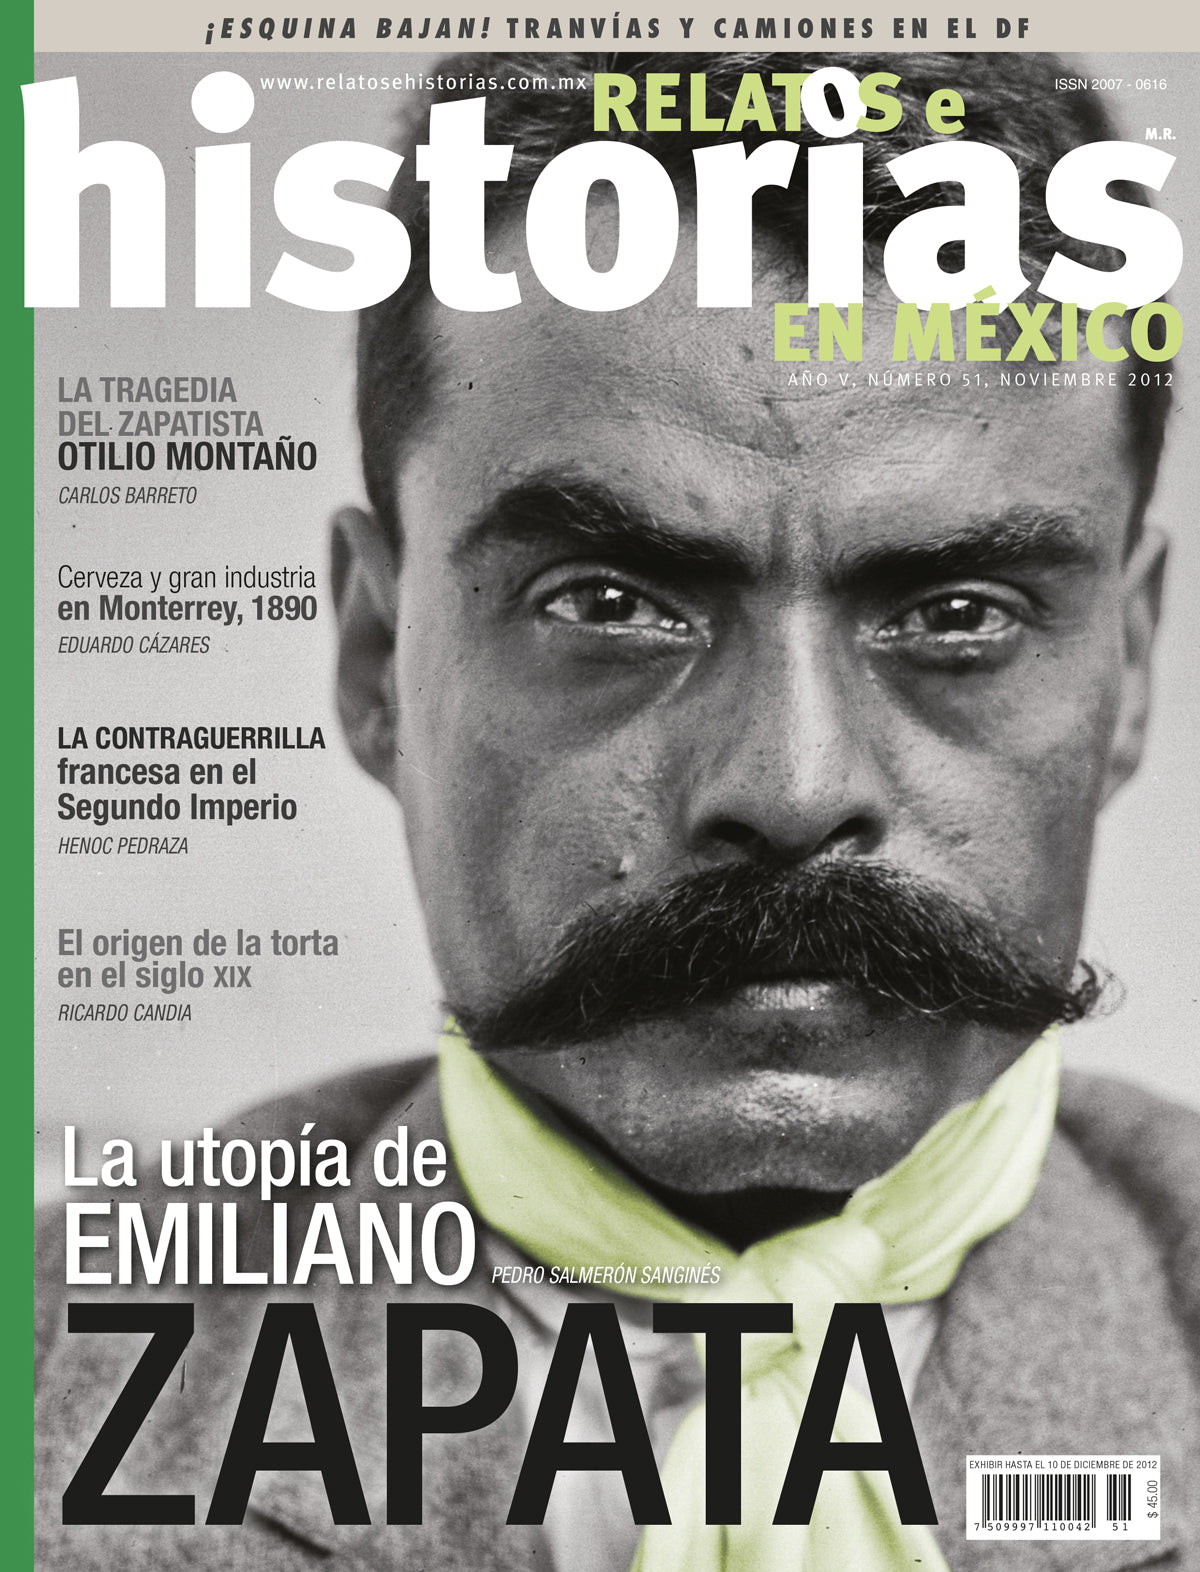 La utopía de Emiliano Zapata